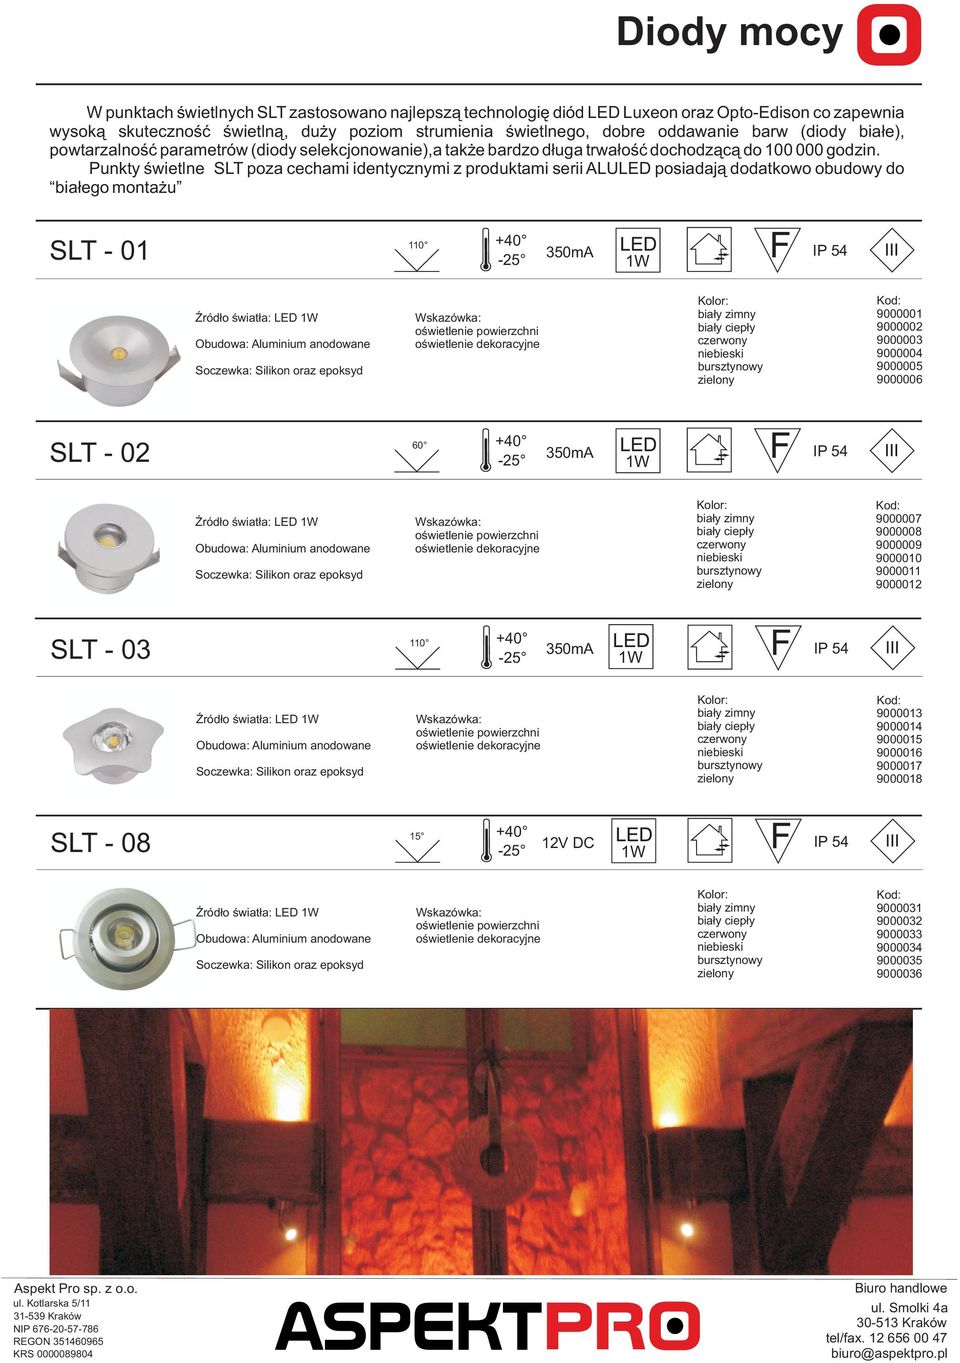 Punkty œwietlne SLT poza cechami identycznymi z produktami serii ALULED posiadaj¹ dodatkowo obudowy do bia³ego monta u SLT - 01 110 ród³o œwiat³a: LED anodowane -25 350mA 60 ród³o œwiat³a: LED